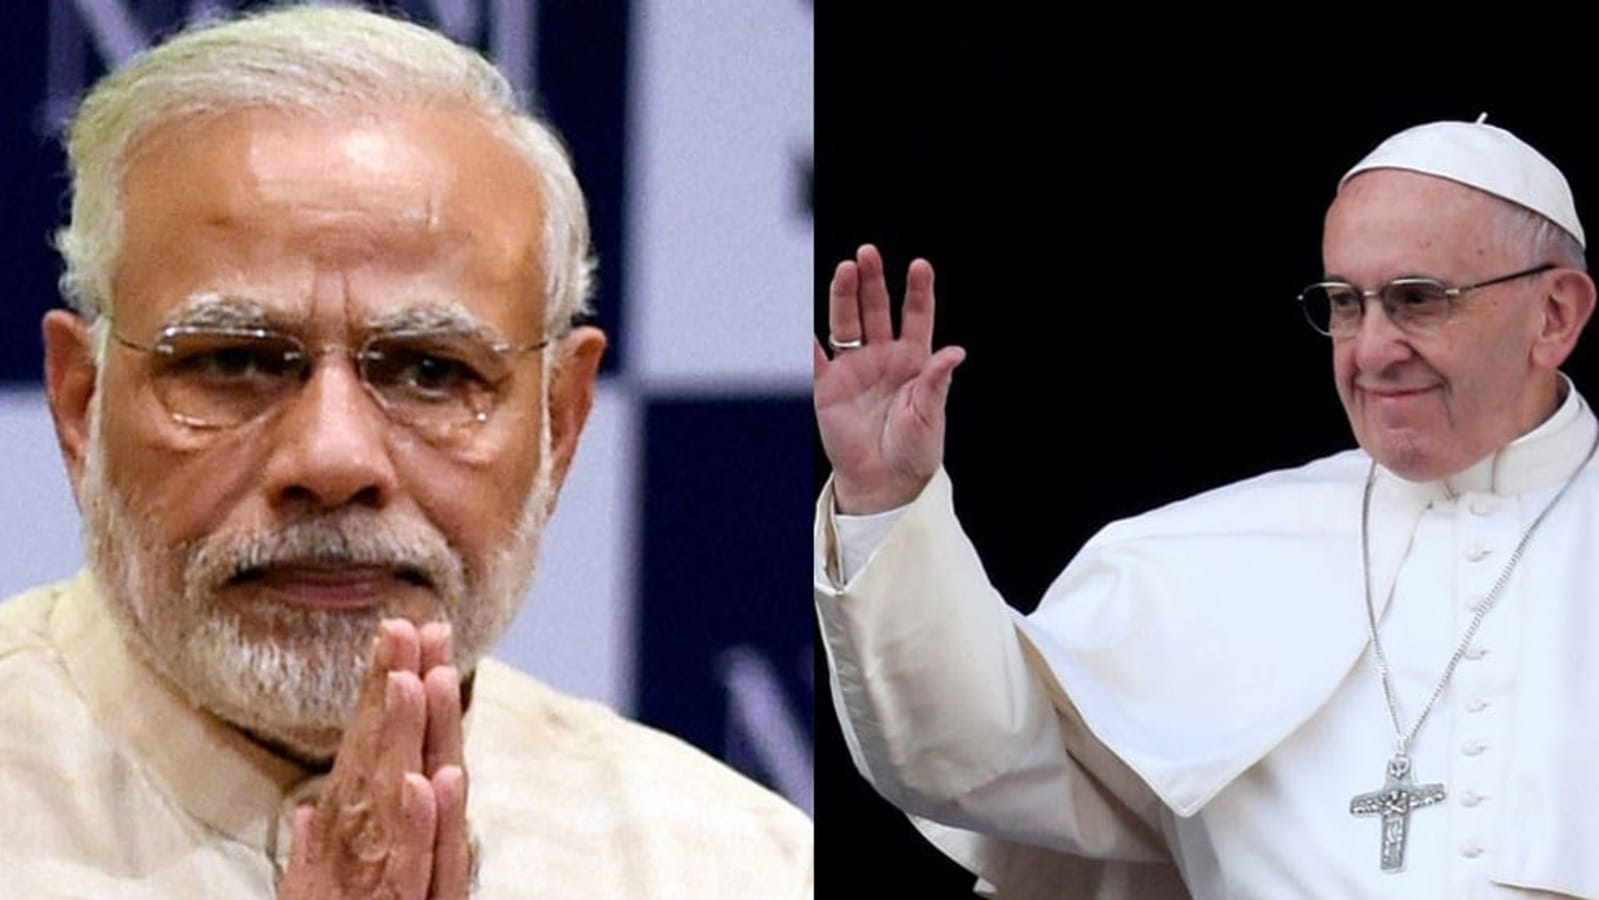 El primer ministro Modi enviará al Papa Francisco al Vaticano antes de asistir a la cumbre del G-20 |  Últimas noticias India